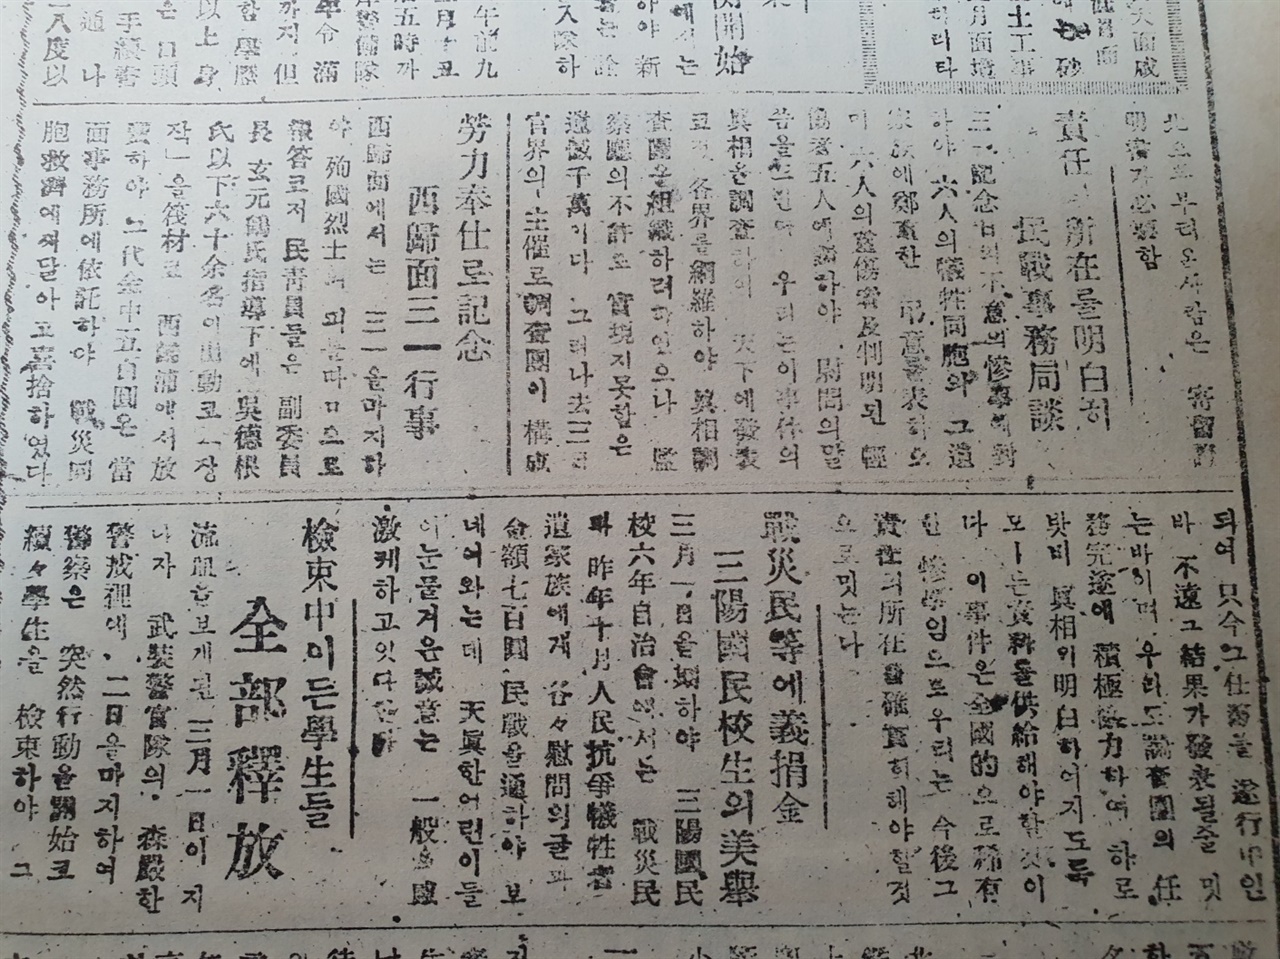 1947년 3월 8일자 <제주신보> 영인본. 기사는 감찰청의 불허로 진상조사단을 구성하지 못한 데 유감을 밝하고 있다.